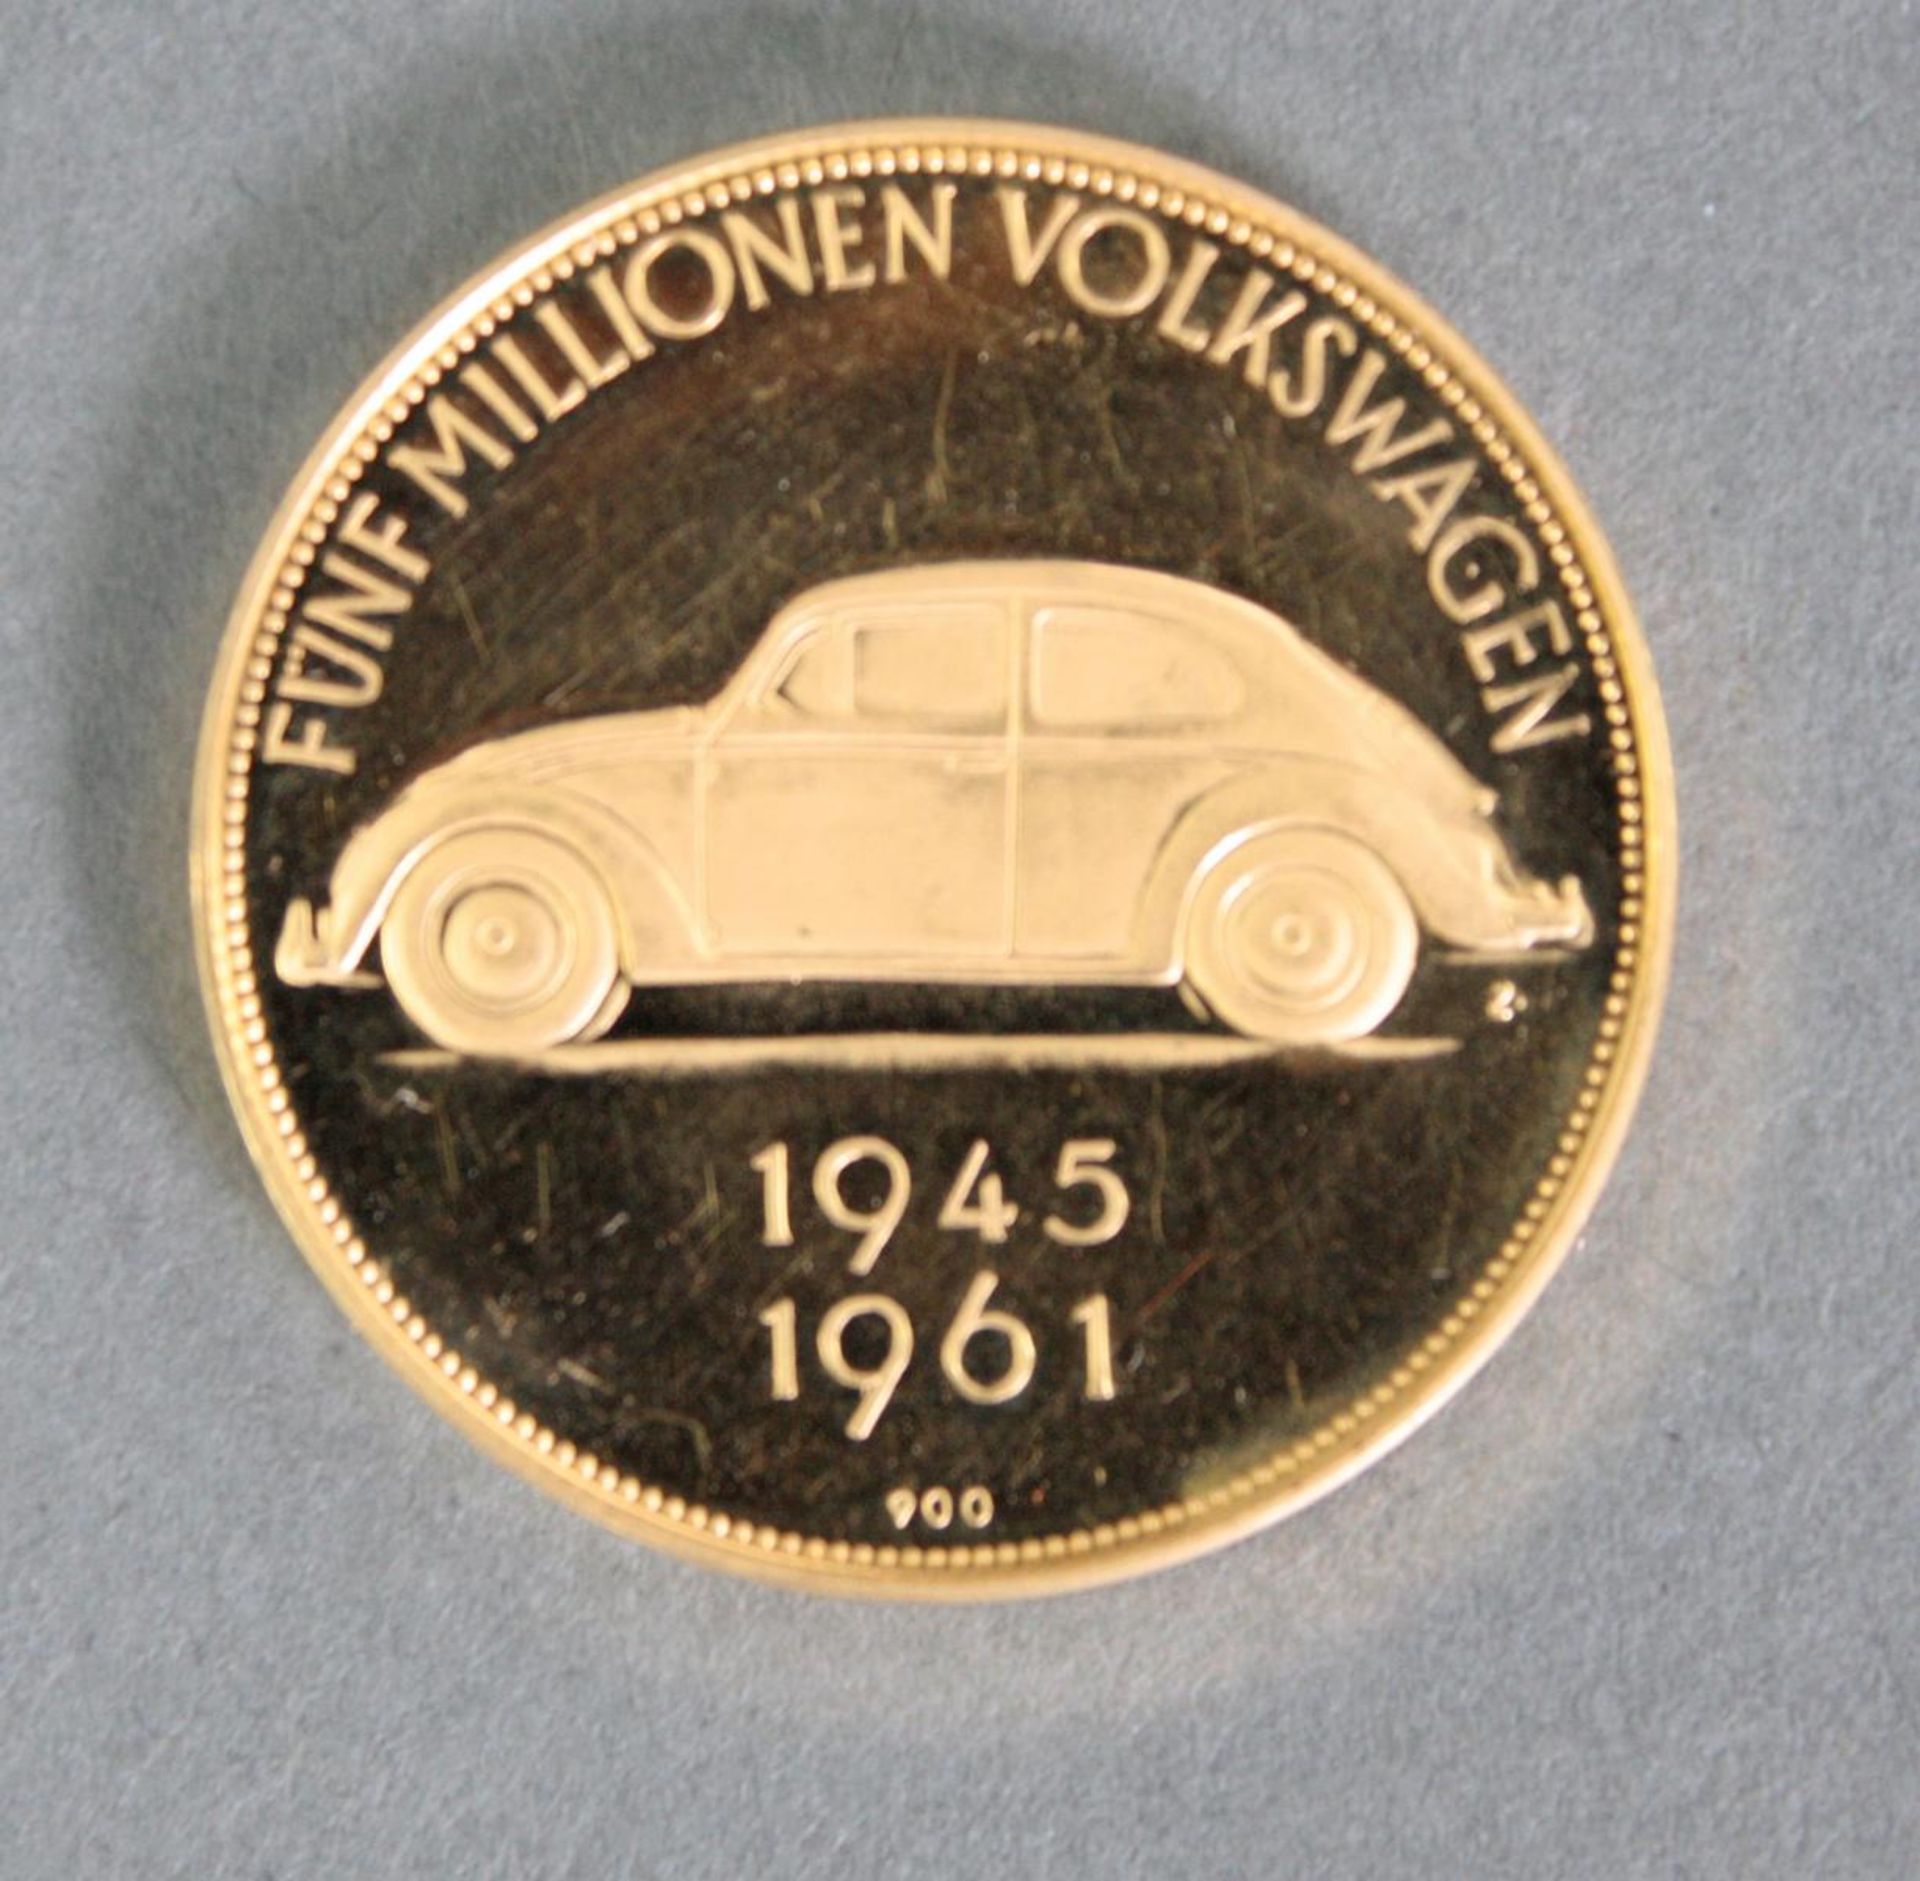 Goldmedaille, 5 Millionen Volkswagen 945 - 1961900er Gold, Durchmesser 30,2 mm, 17,5 g. - Bild 2 aus 2